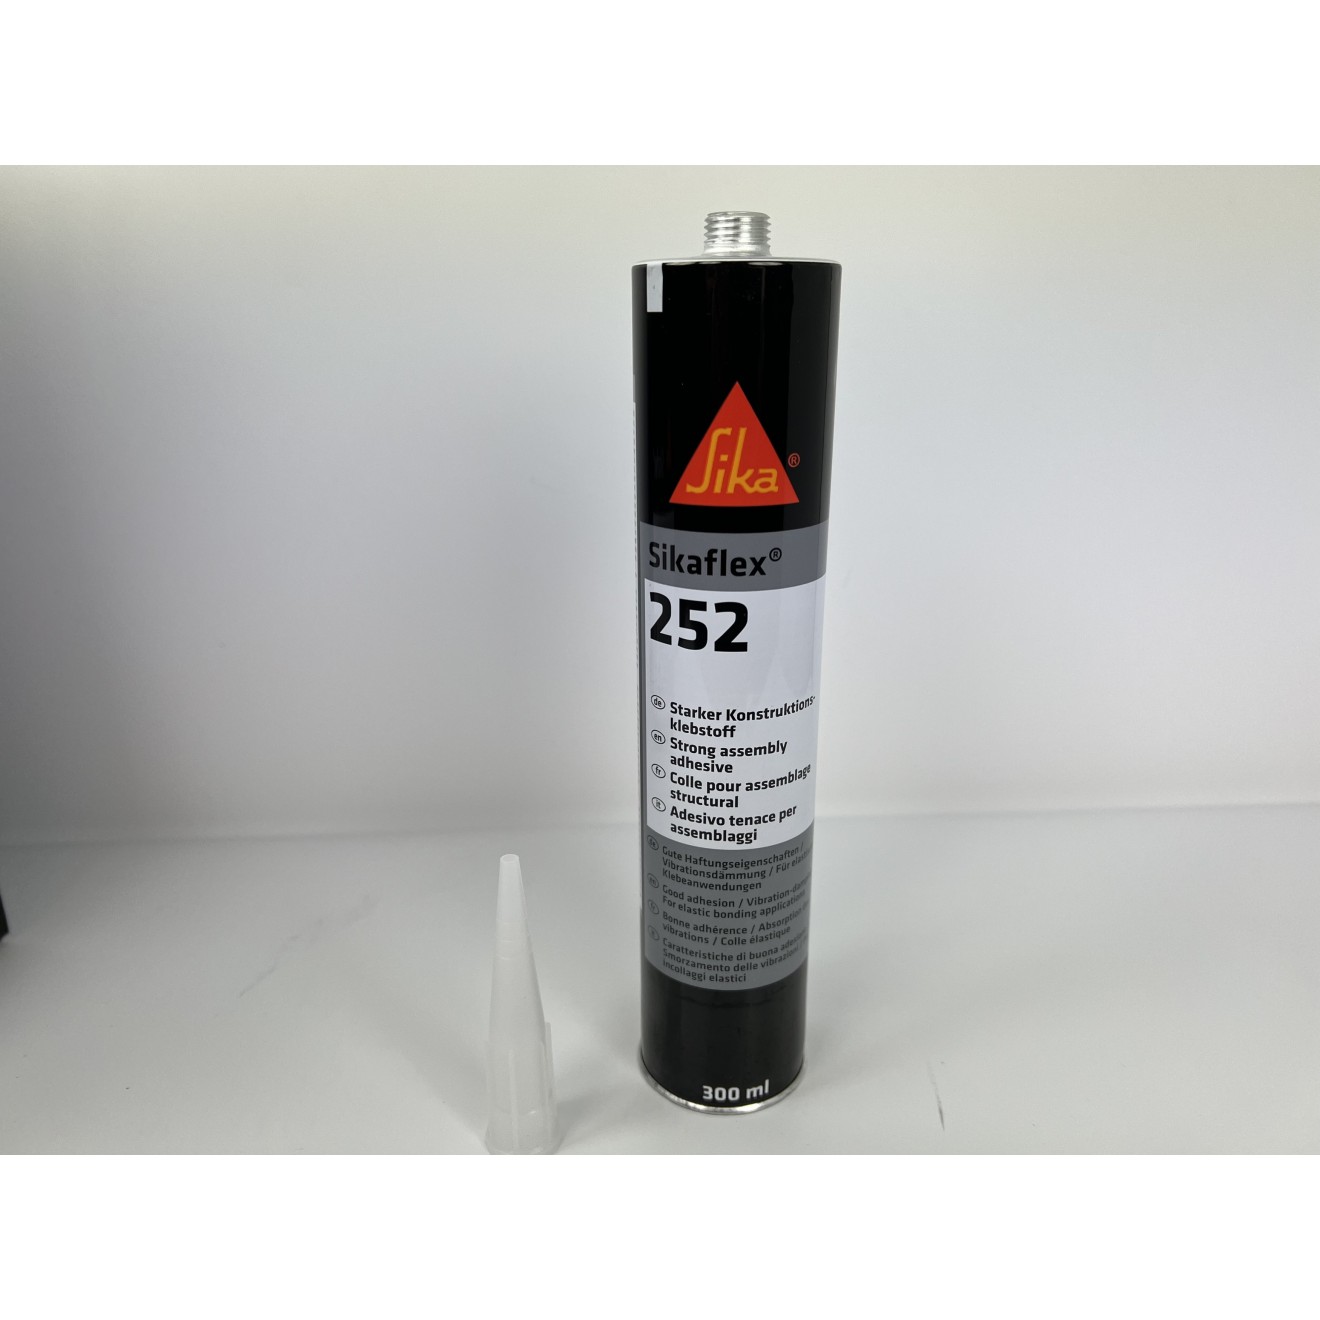 Sikaflex-252 schwarz, 300ml, Elastischer Klebstoff für Verklebungen im Fahrzeugbau